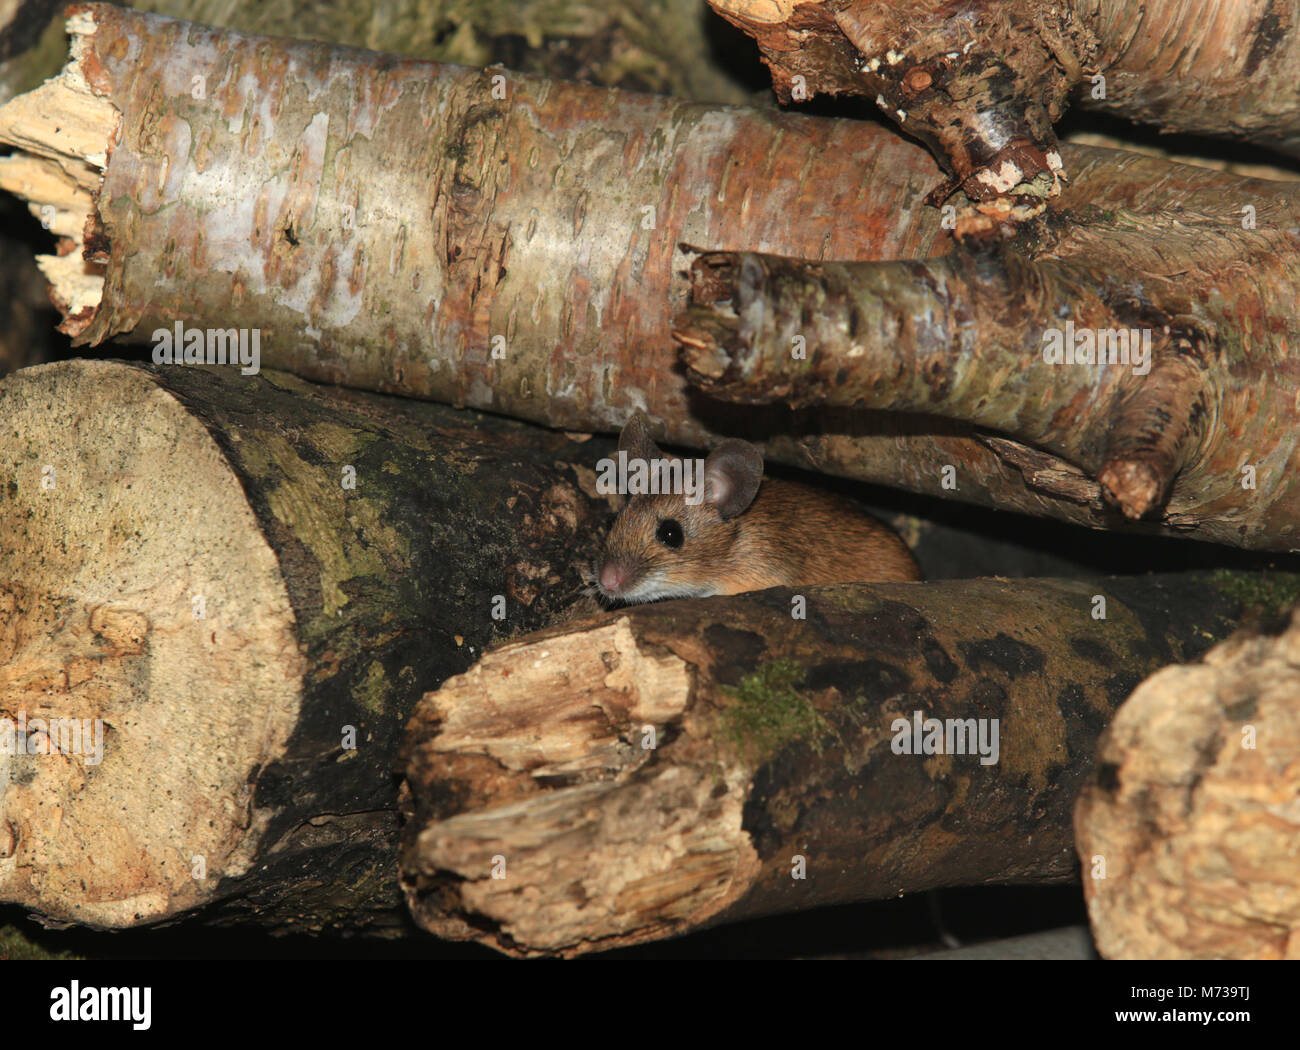 Un ratón de madera (Apodemus sylvaticus) escondido en un montón de madera en un jardín inglés en invierno. Foto de stock